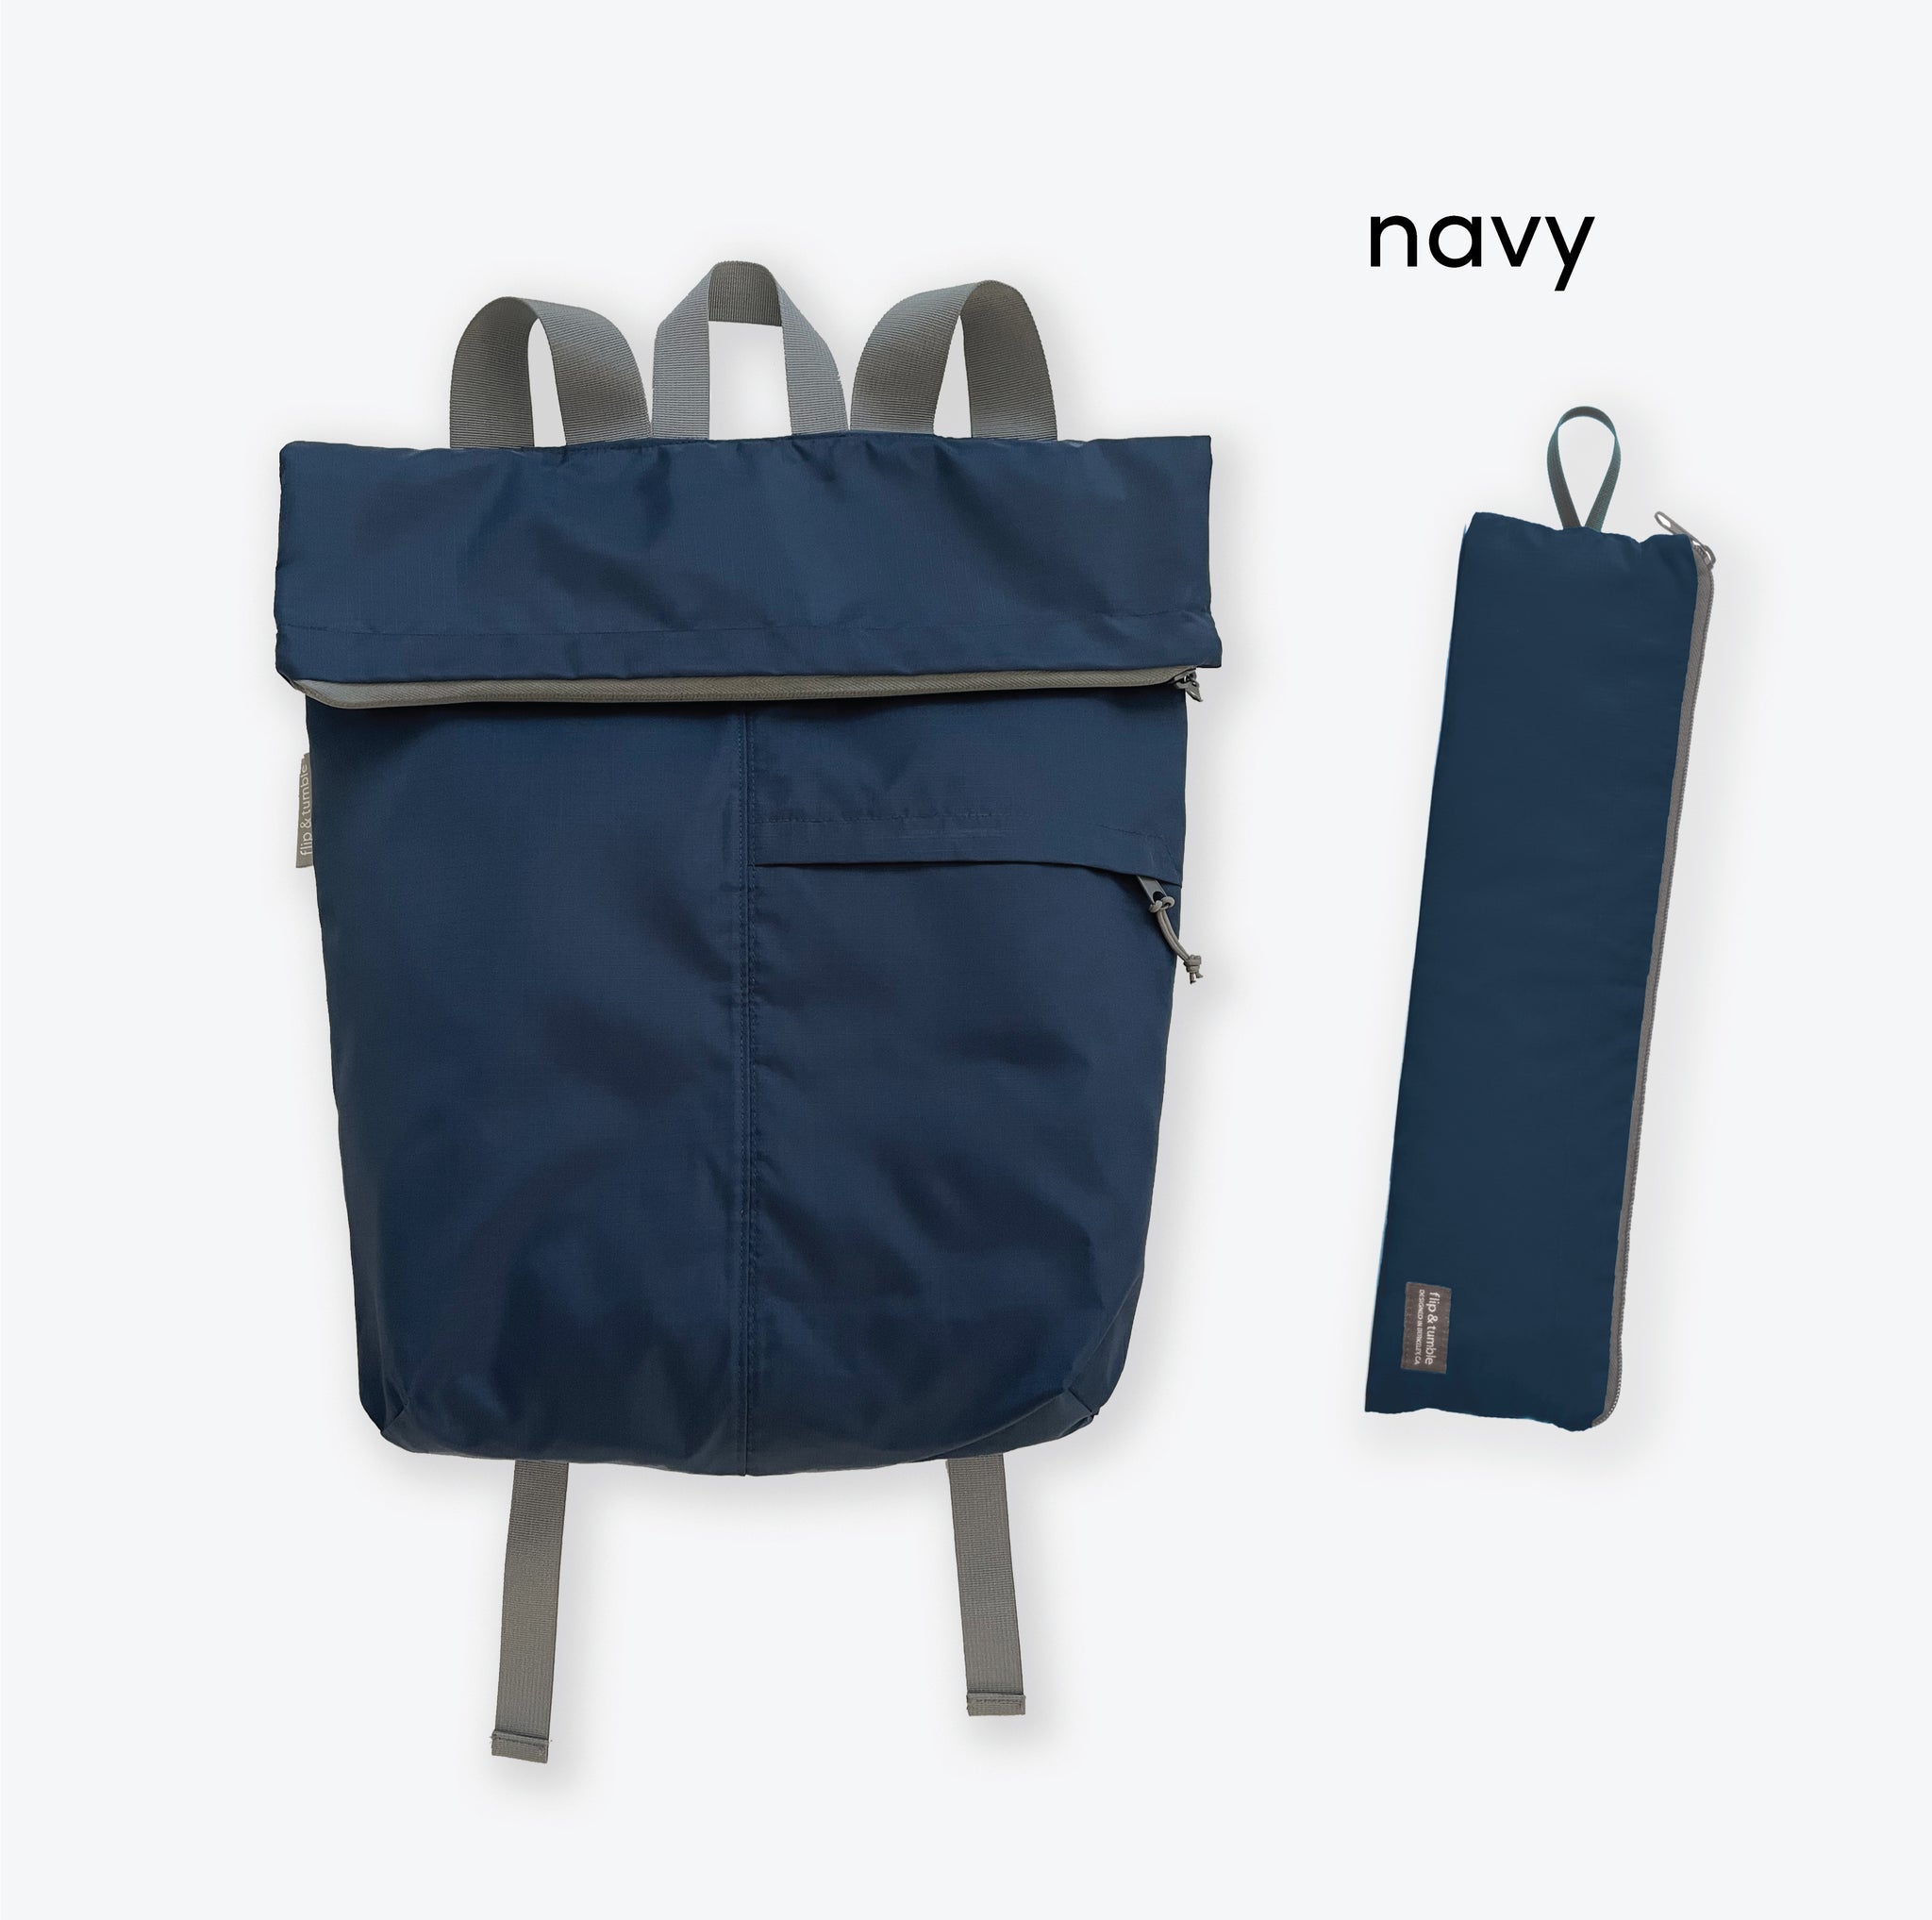 custom branded backpack